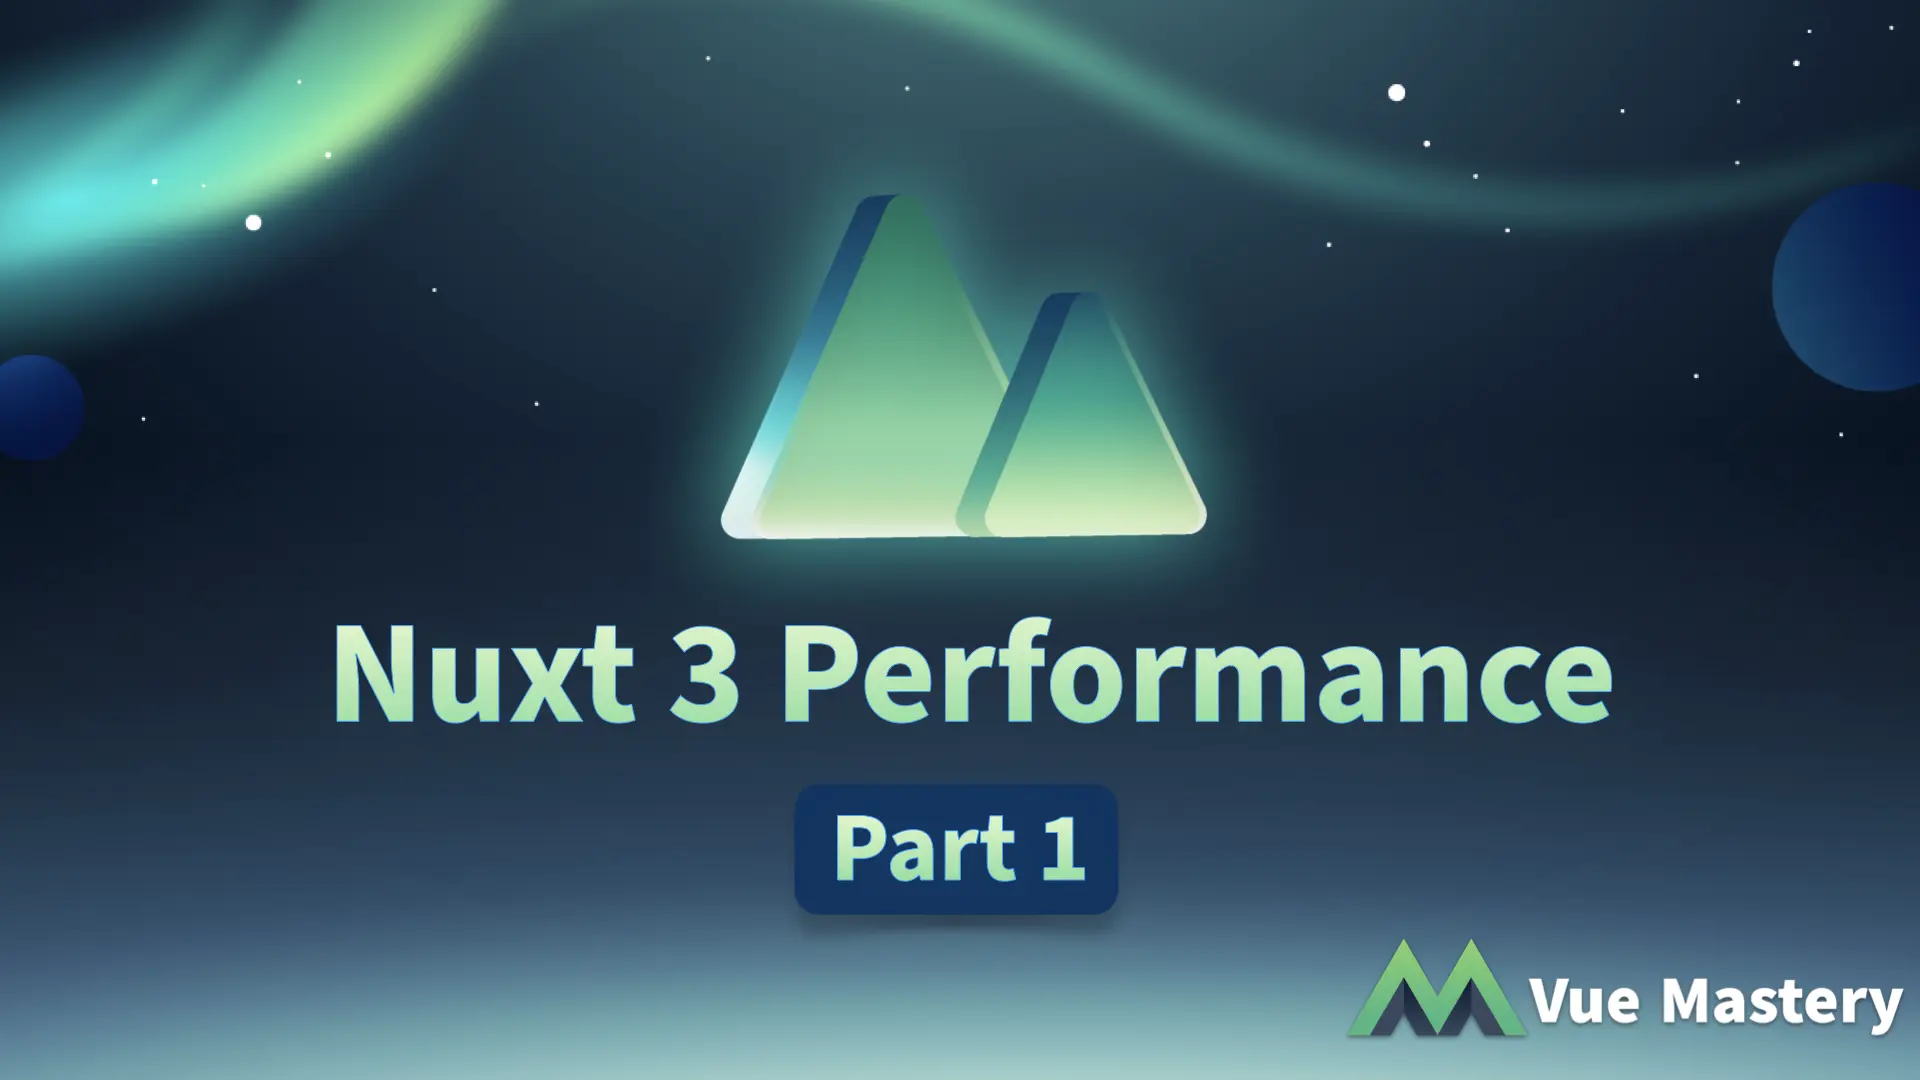 Nuxt 3 Performance Pt 1